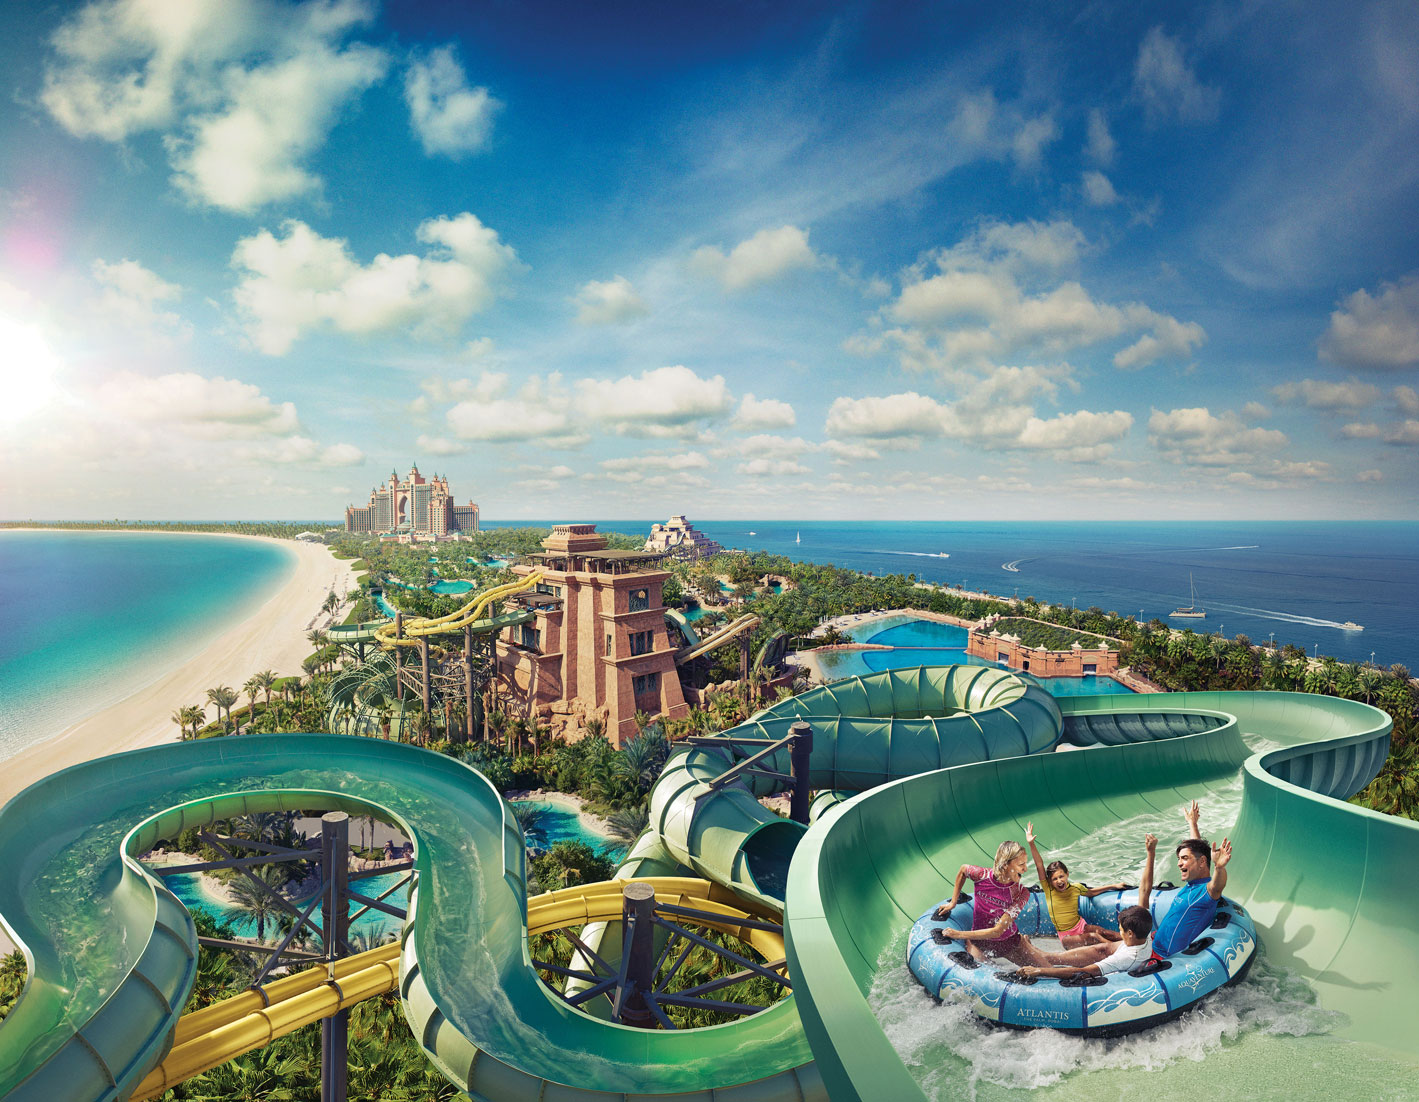 Het waterpark van Atlantis The Palm (persfoto)